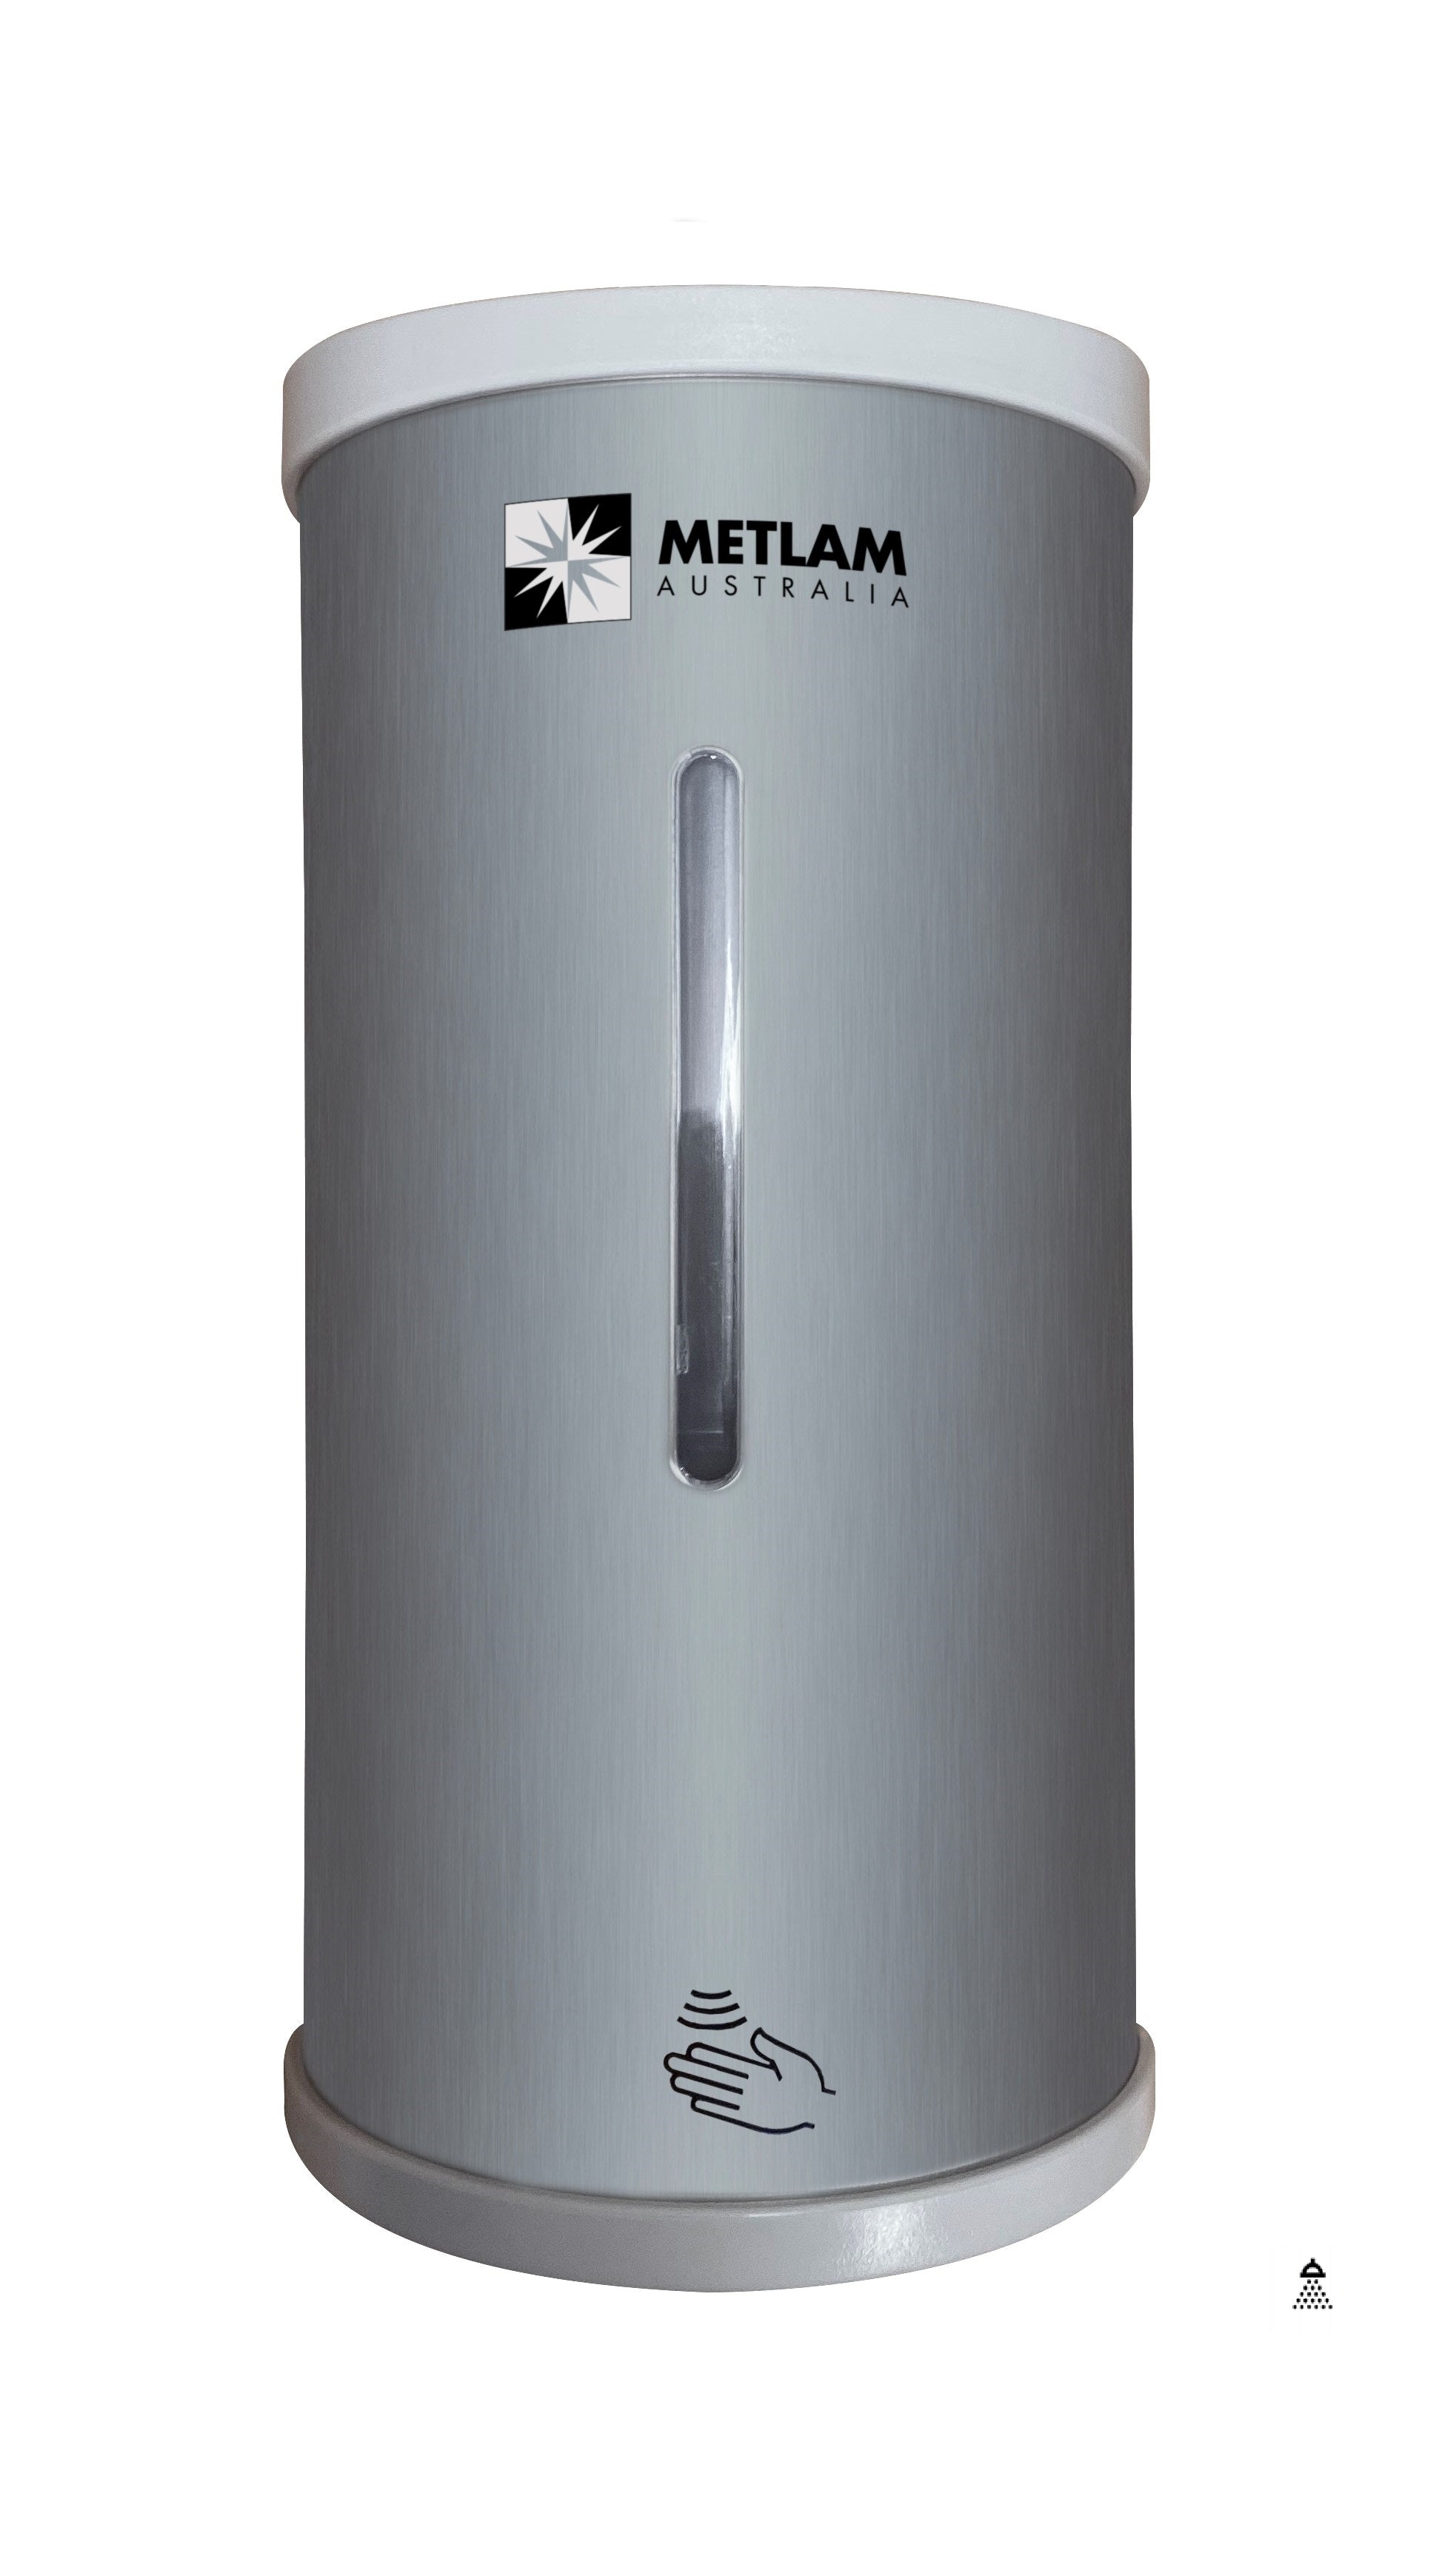 Stand in White & Sanitiser Dispenser Kit in Stainless Steel